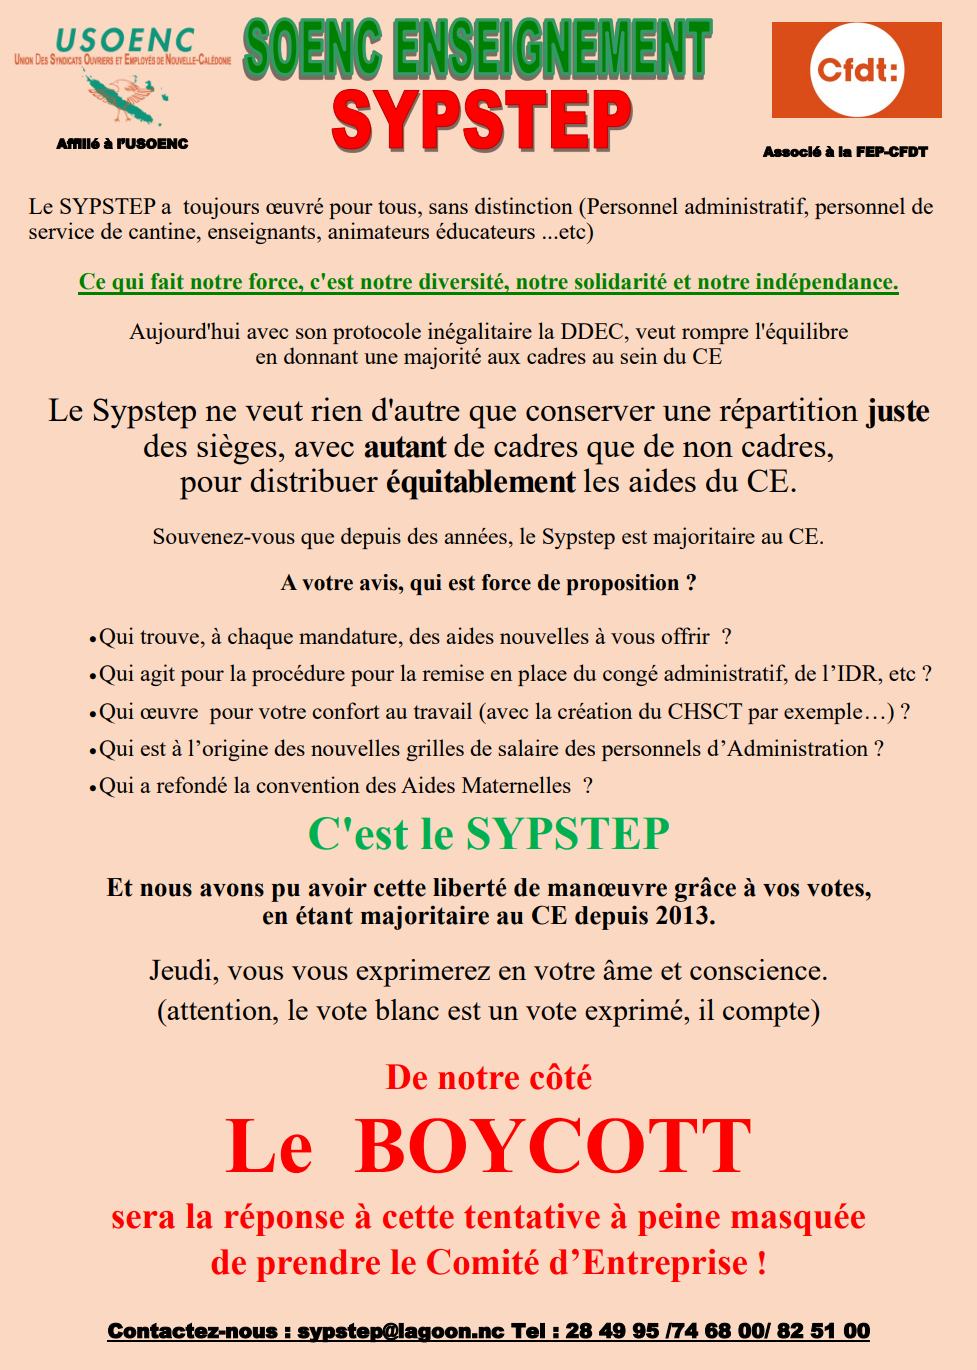 Le SyPSTEP dénonce ! : « Le BOYCOTT sera la réponse à cette tentative à peine masquée de prendre le Comité d’Entreprise ! »